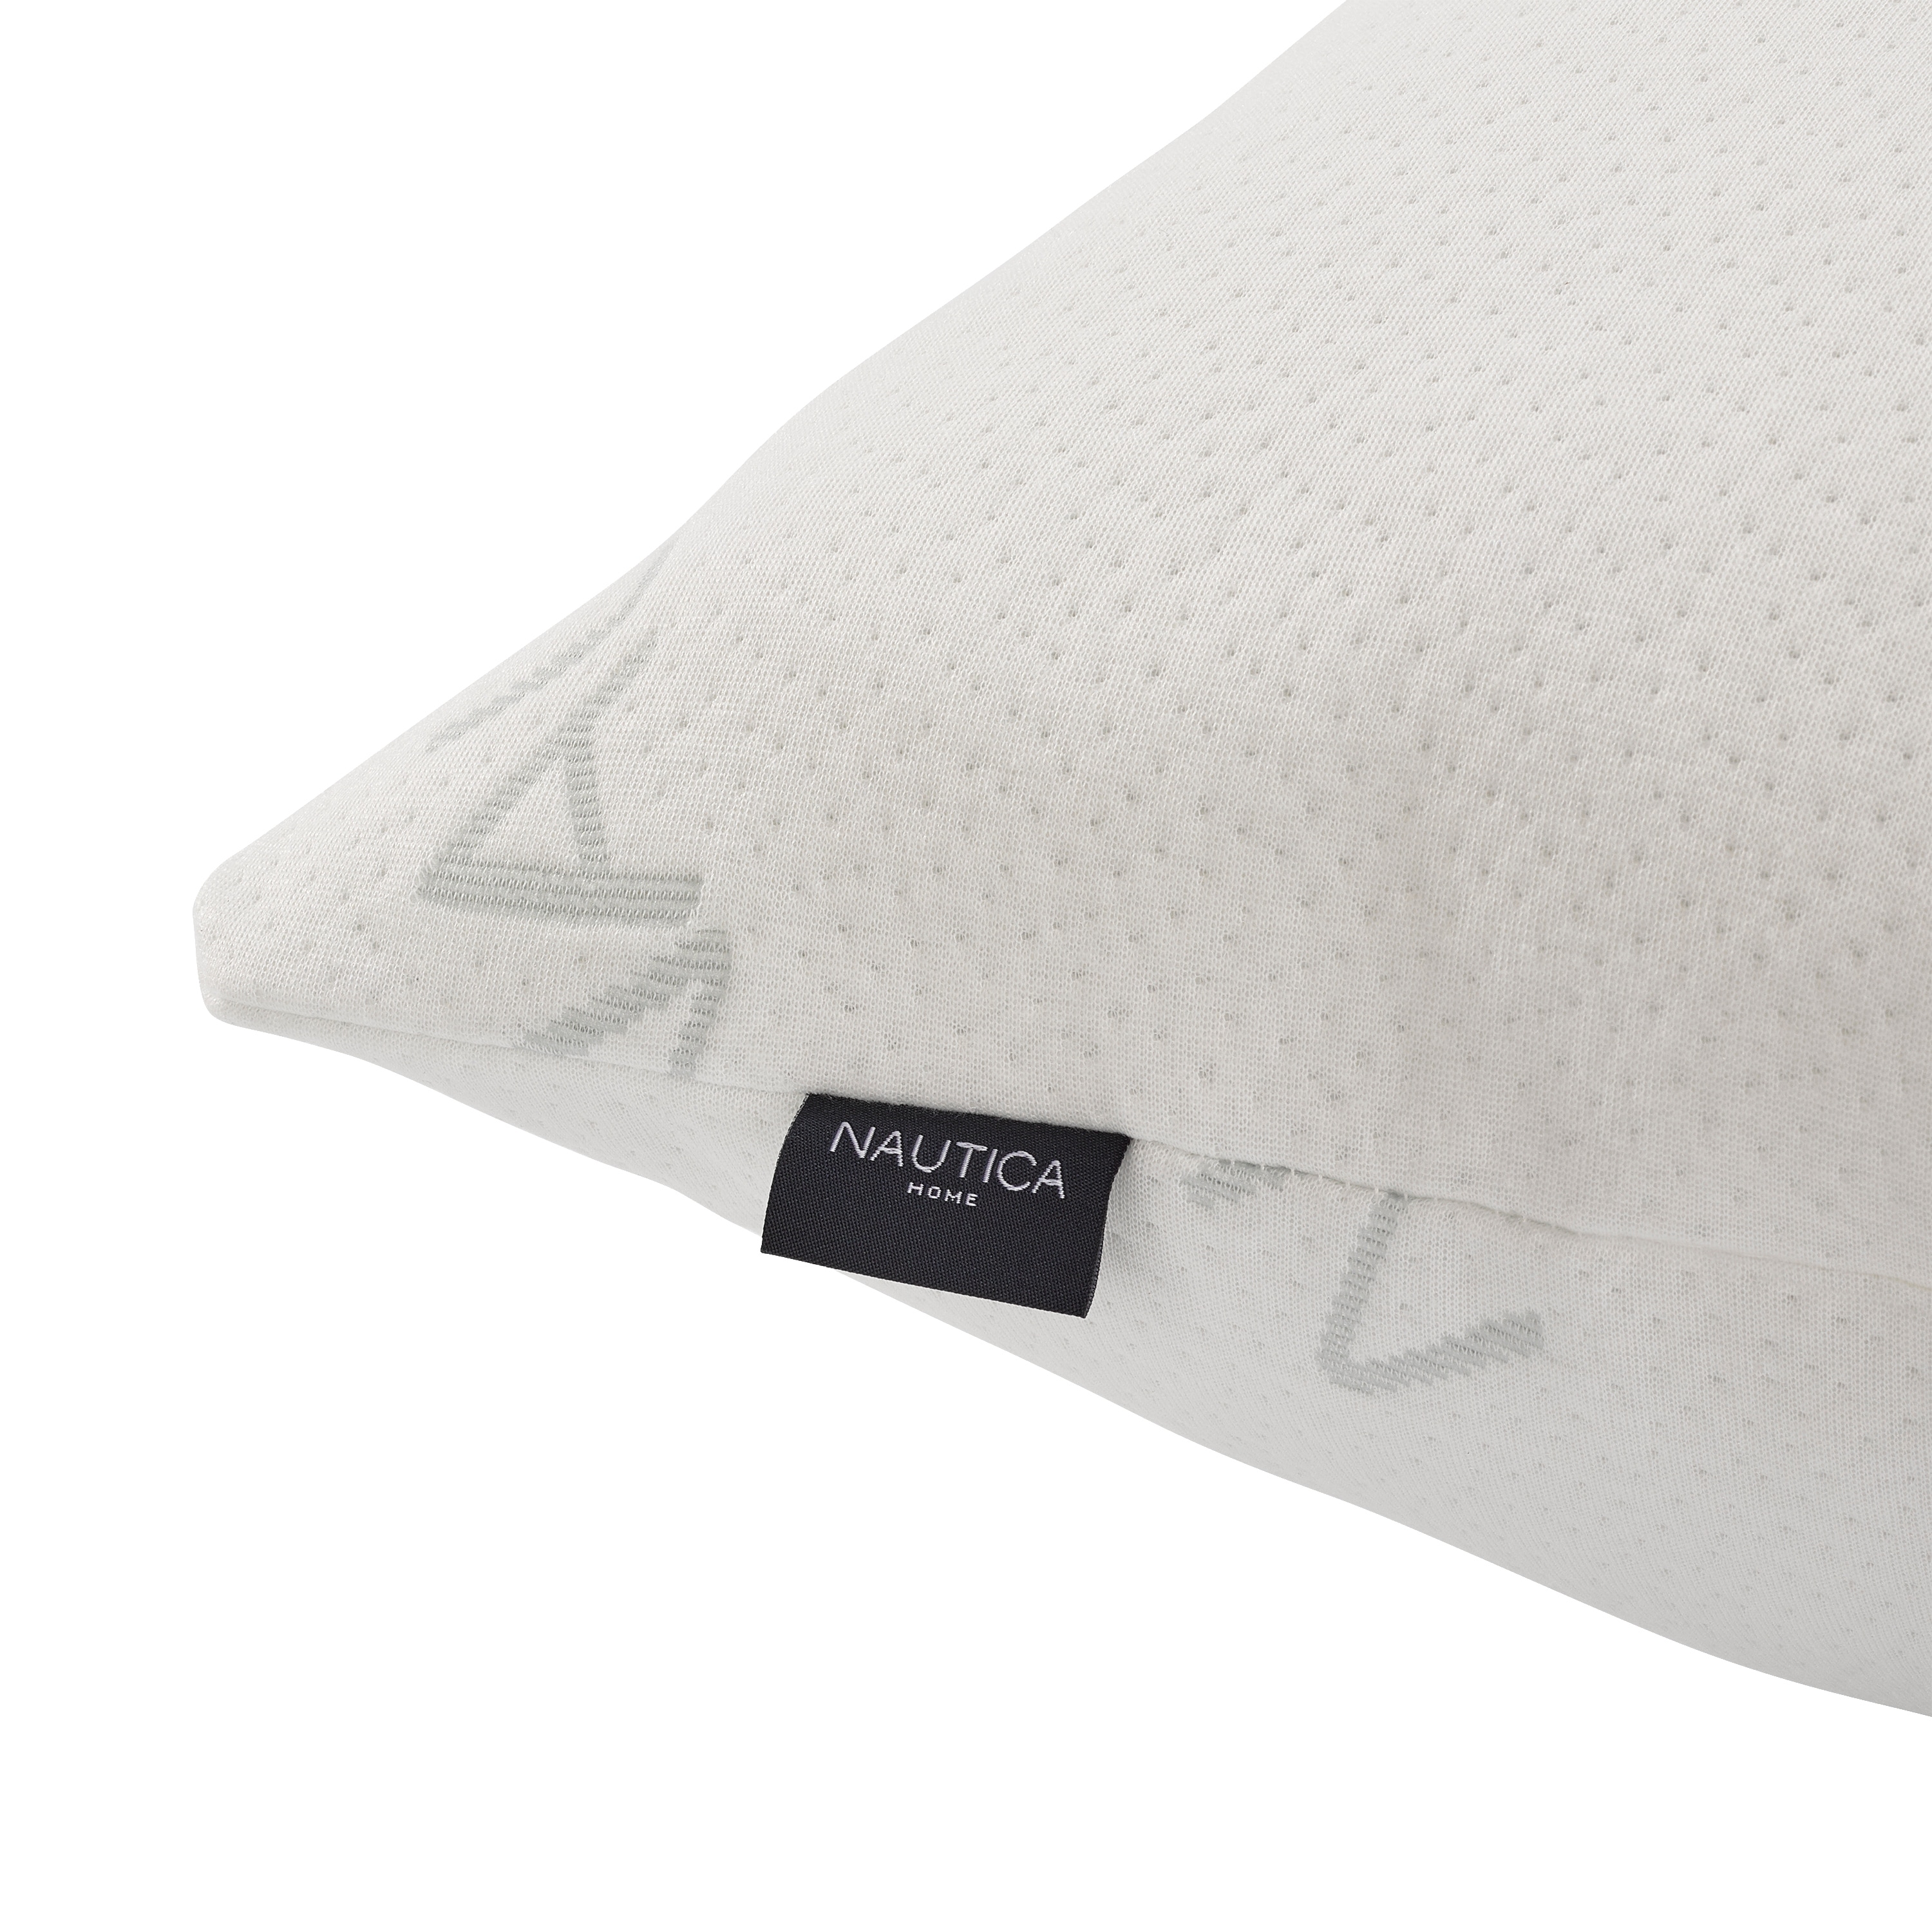 Nautica Home Luxury Knit Pillow - White